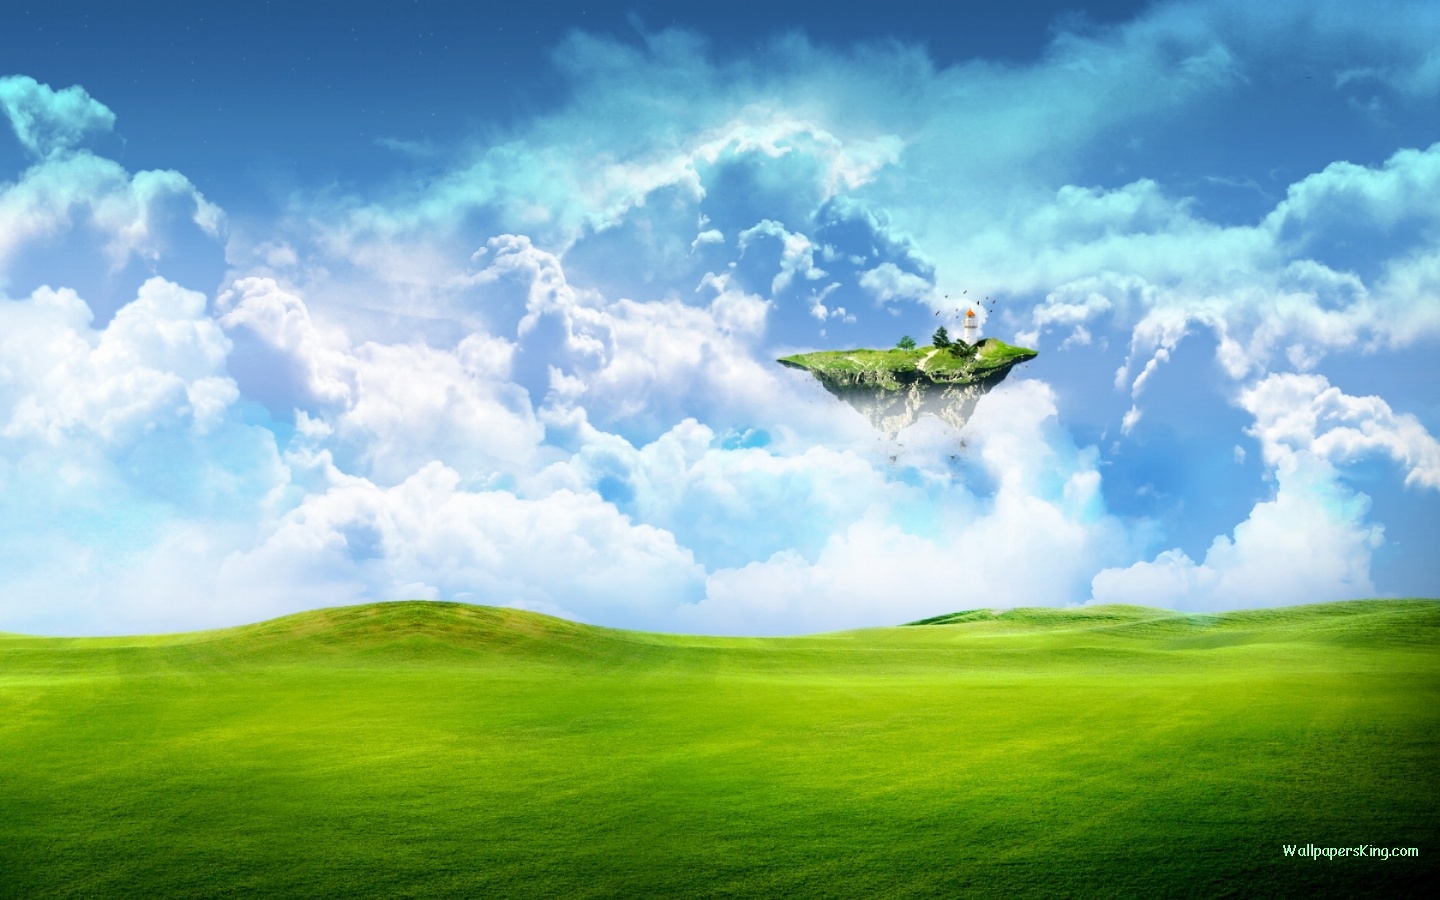 壁纸 梦幻的绿色风景 1920x1200 HD 高清壁纸, 图片, 照片